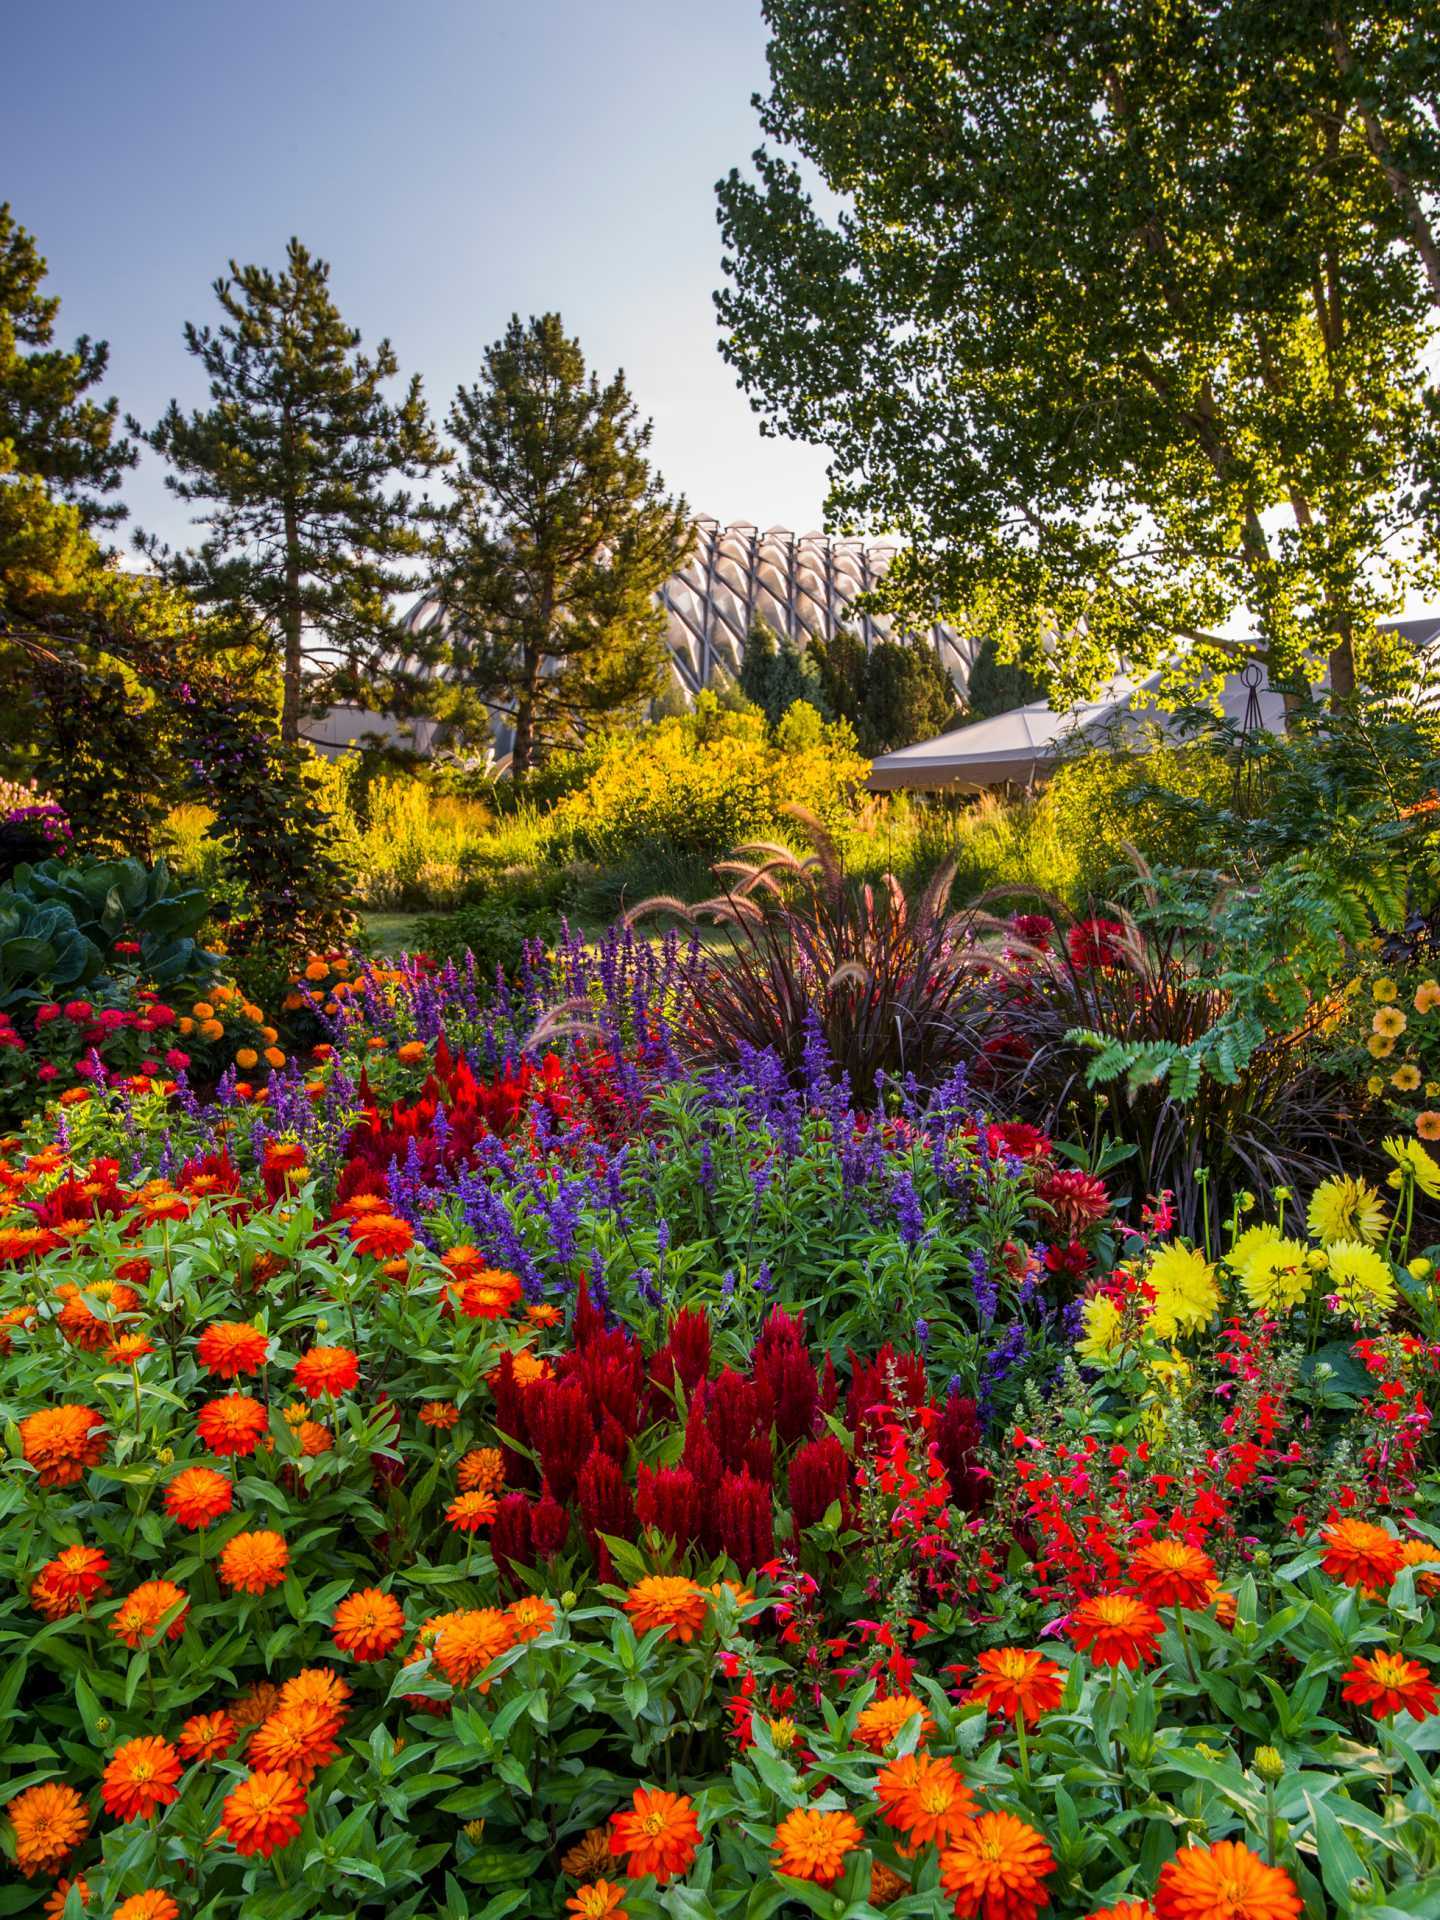 Denver, Colorado | Flowers in the Denver Botanic Gardens